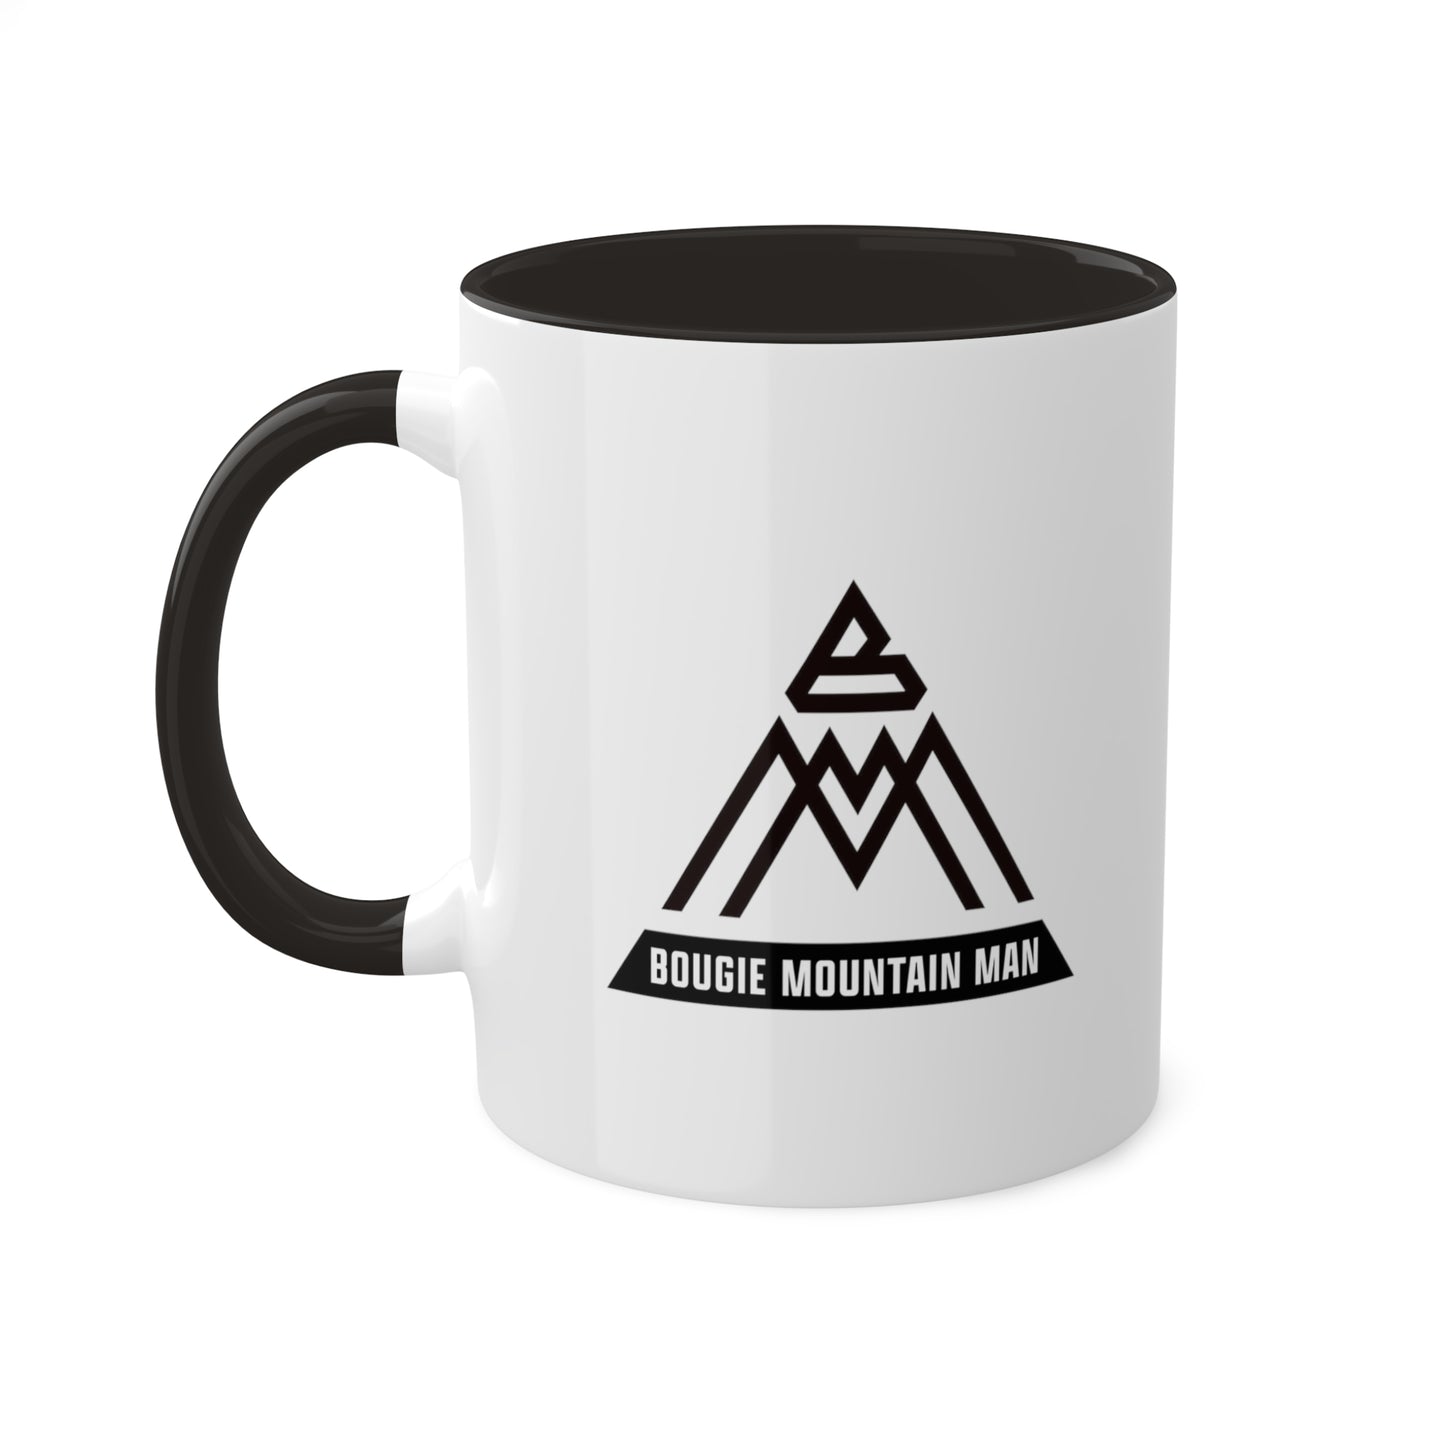 Bougie Mountain Man Mug (logo - no wood)